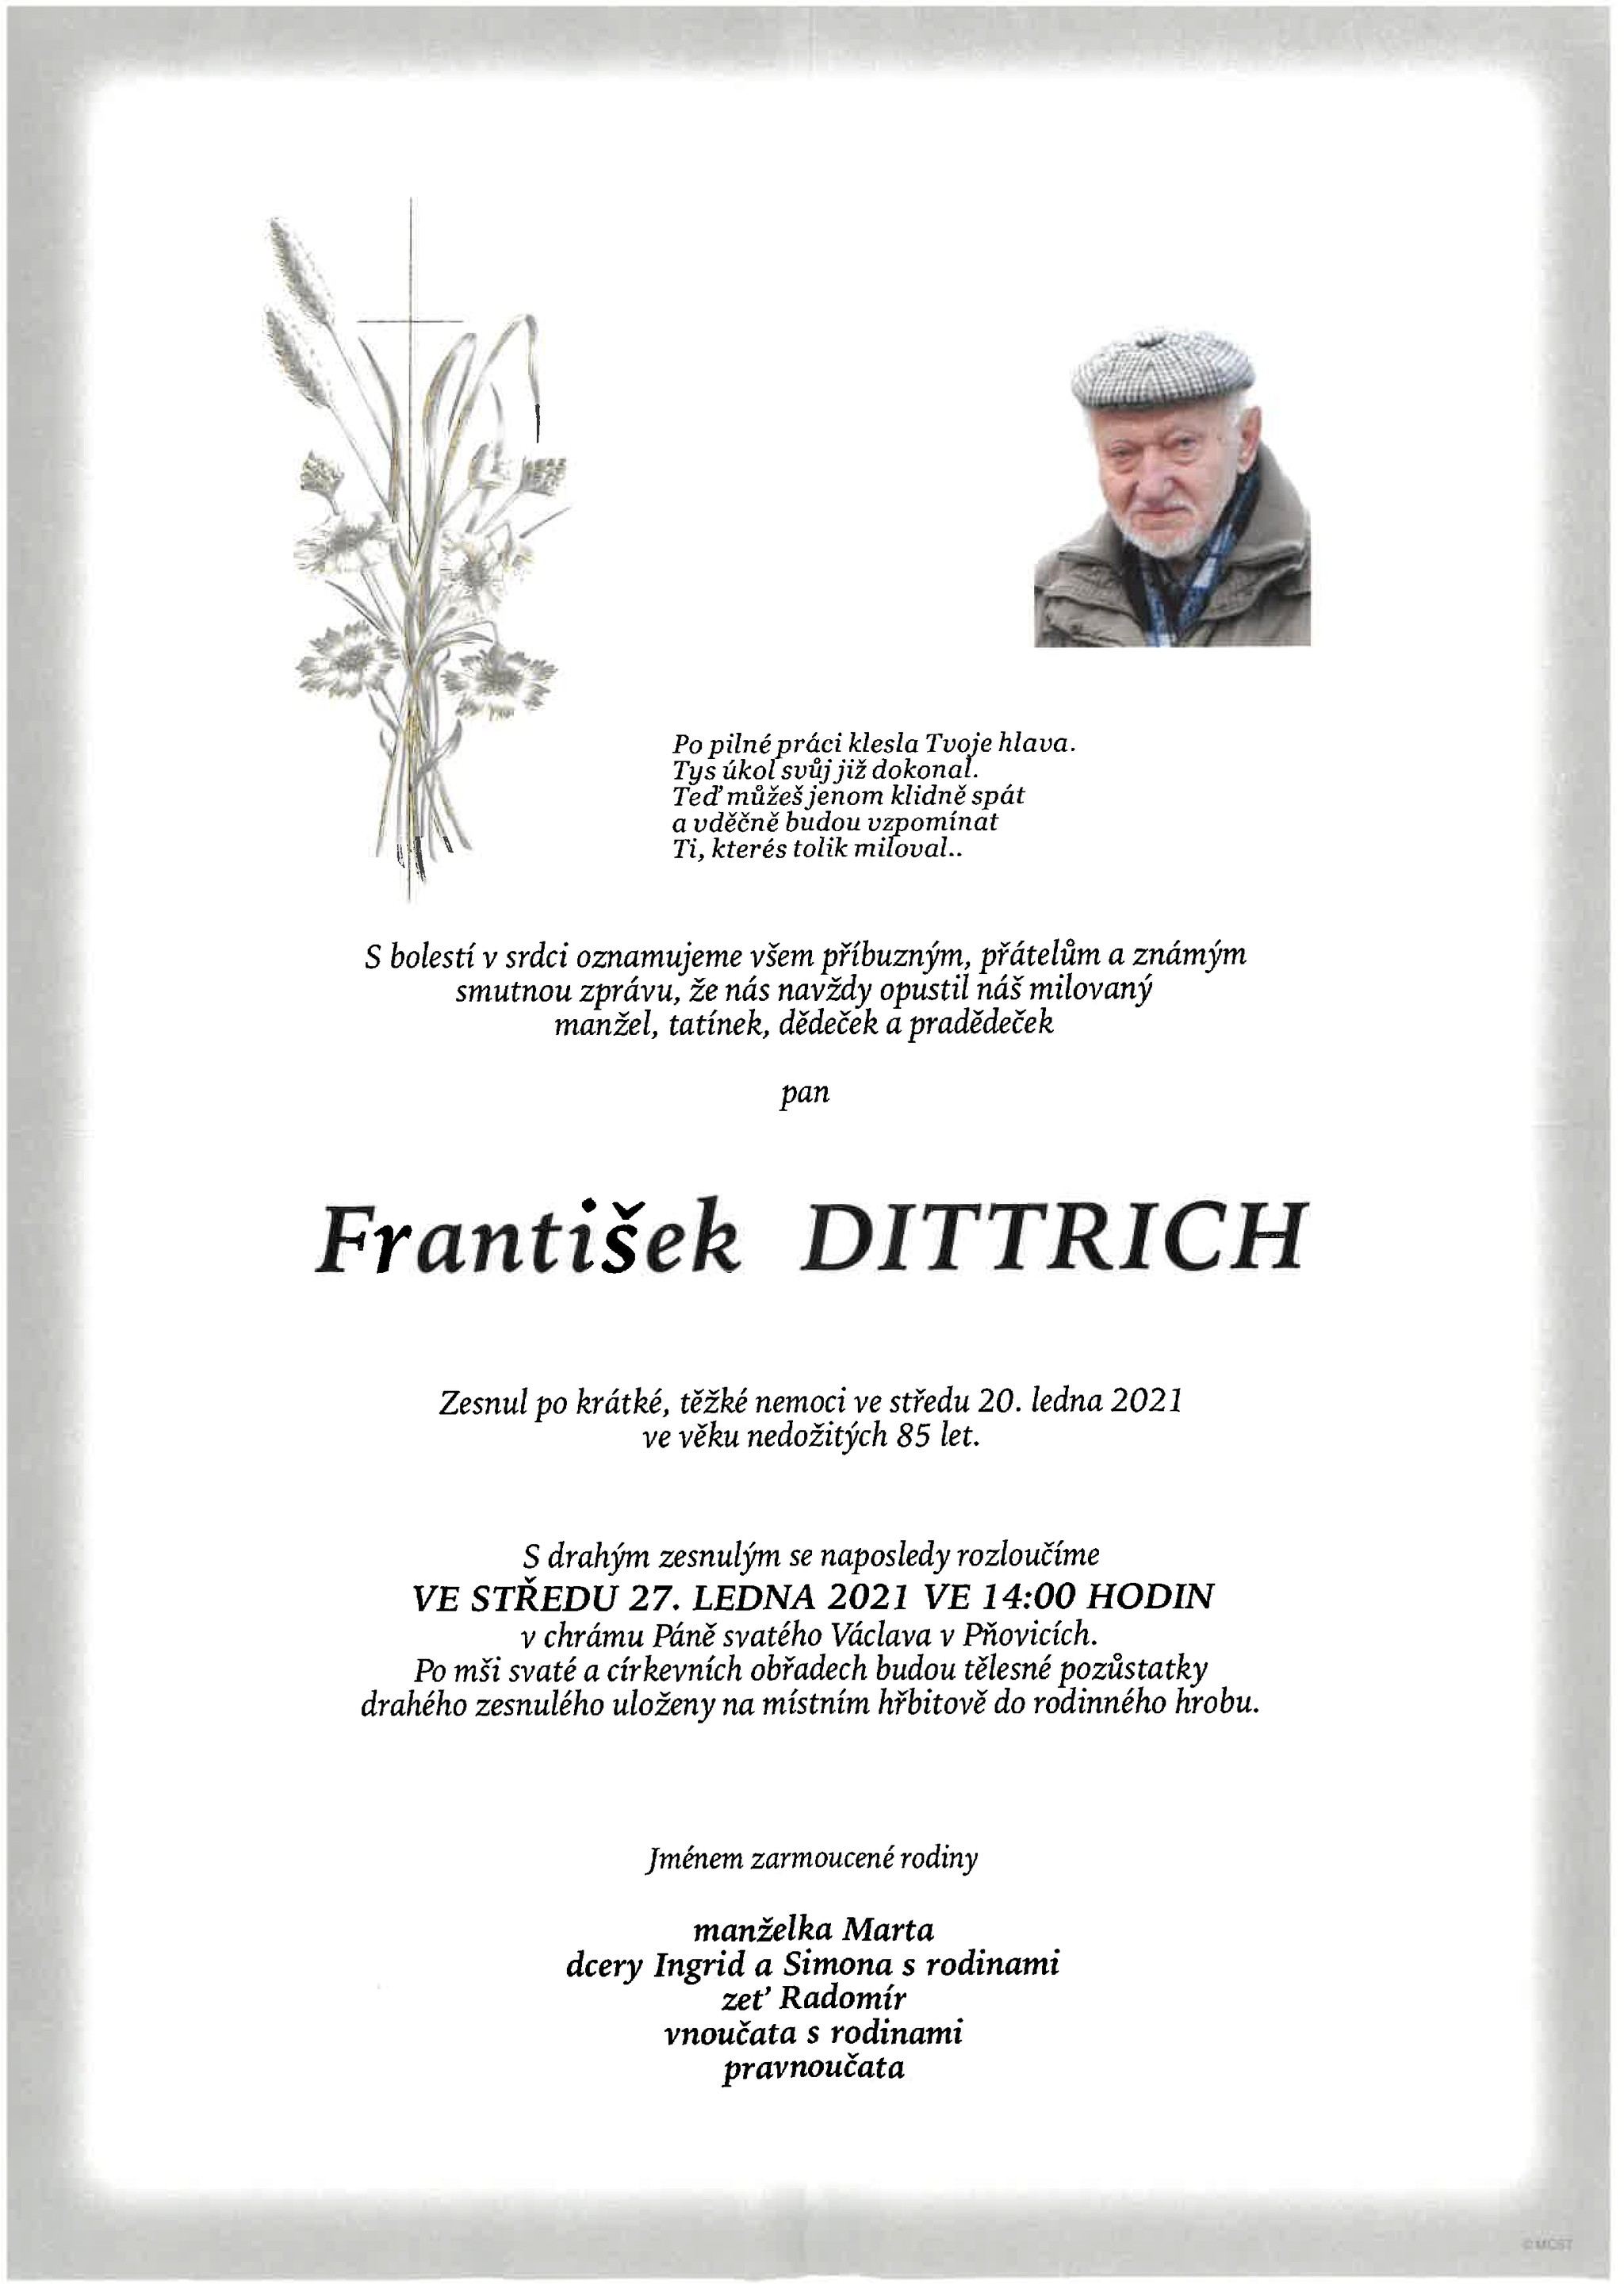 František Dittrich